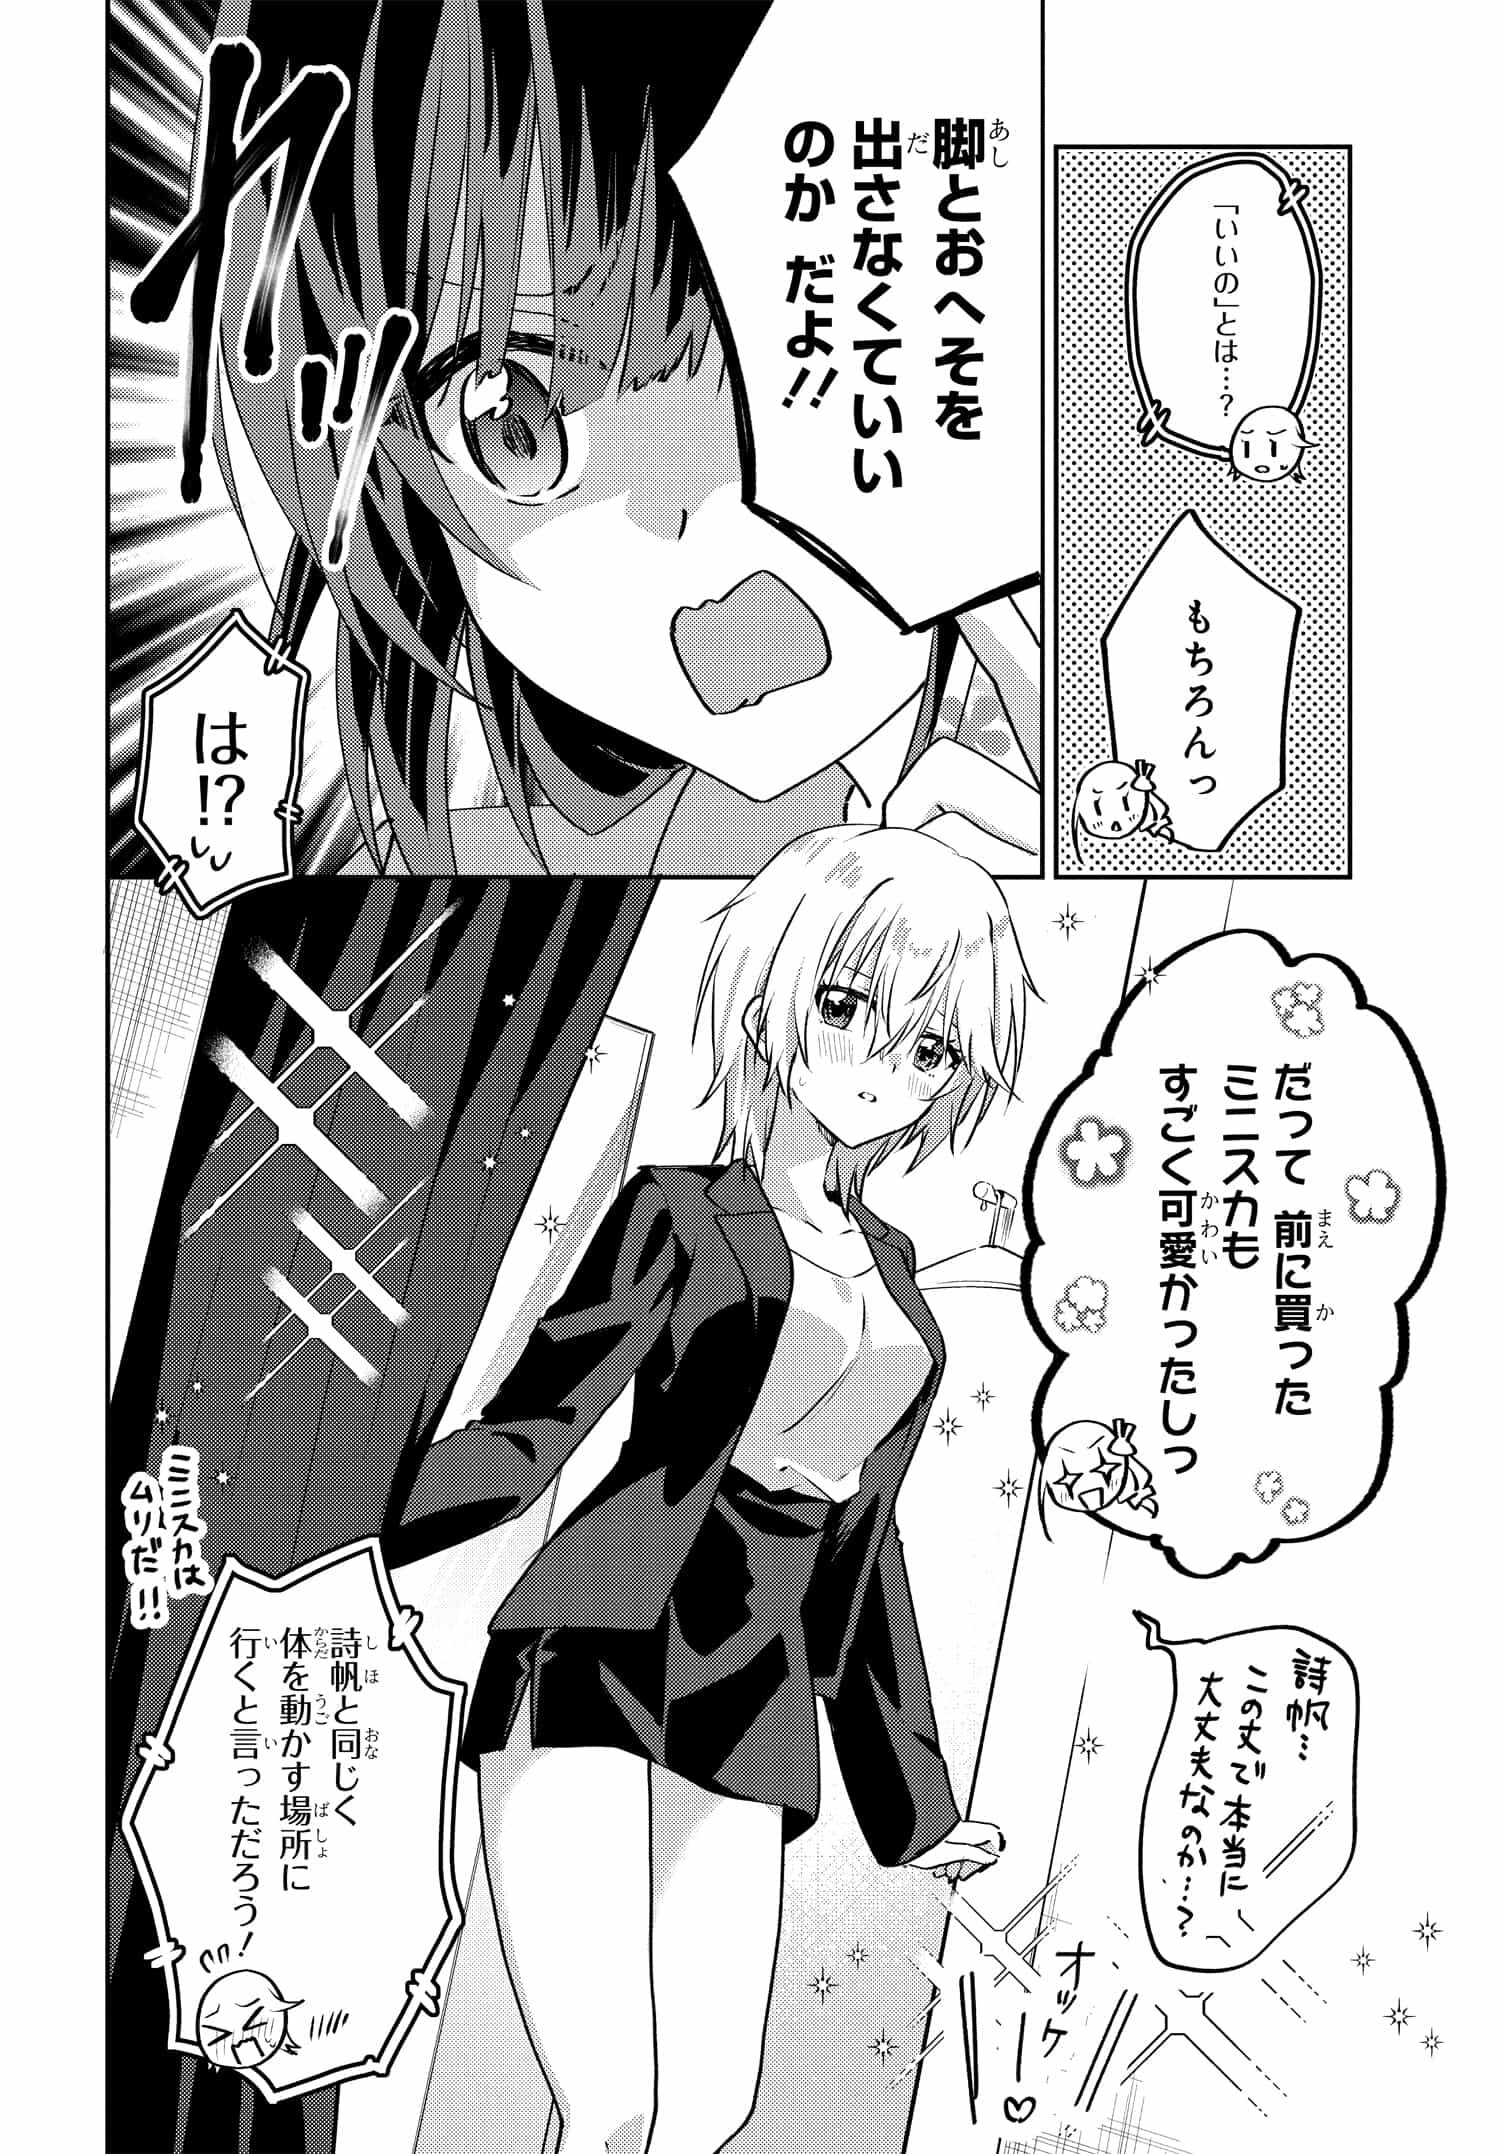 Romcom Manga ni Haitte Shimatta no de, Oshi no Make Heroine wo Zenryoku de Shiawase ni suru - Chapter 6.3 - Page 2